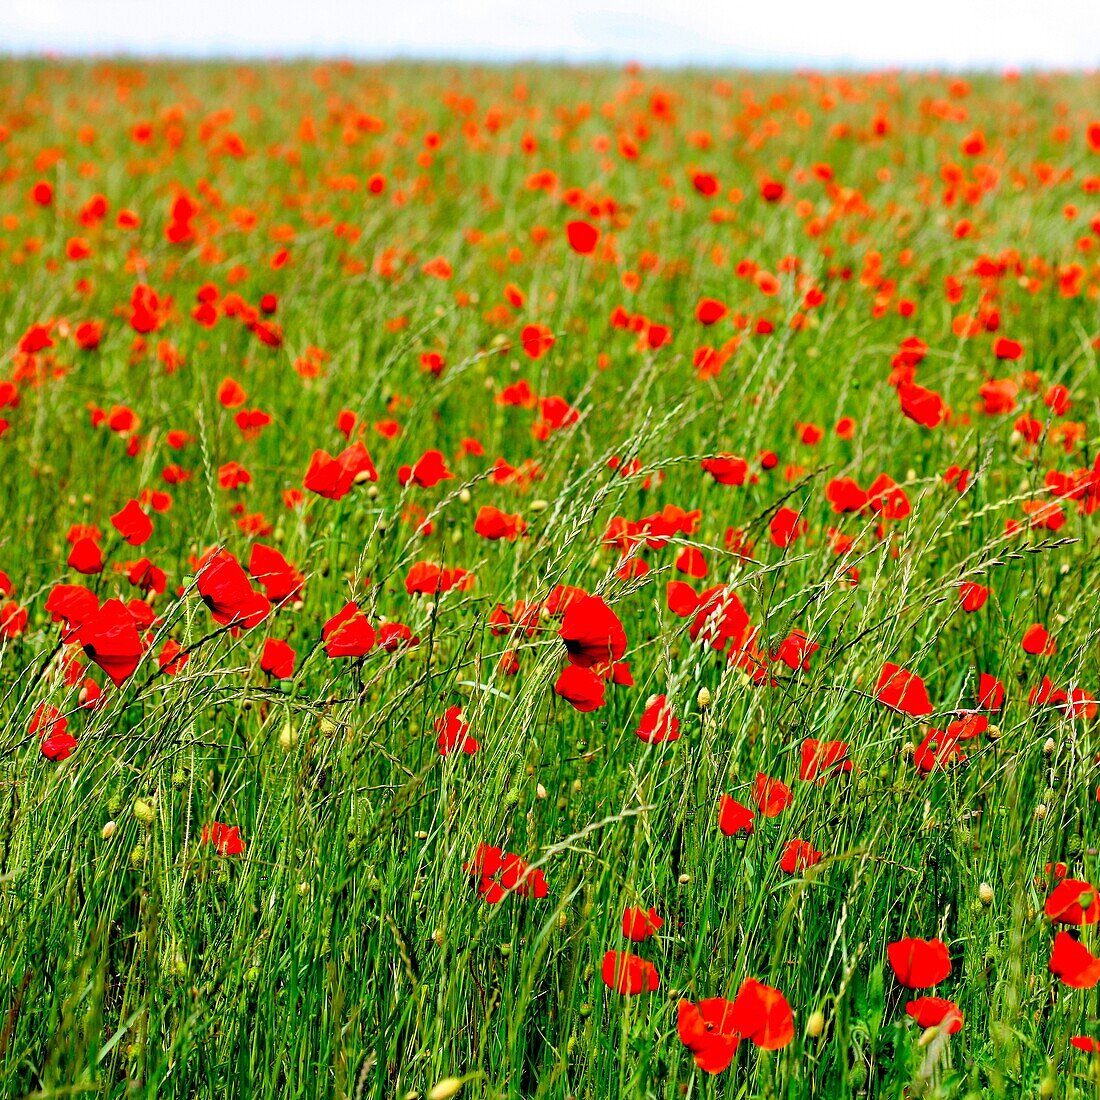 Red Poppies in a Field Delightful Summer Scene